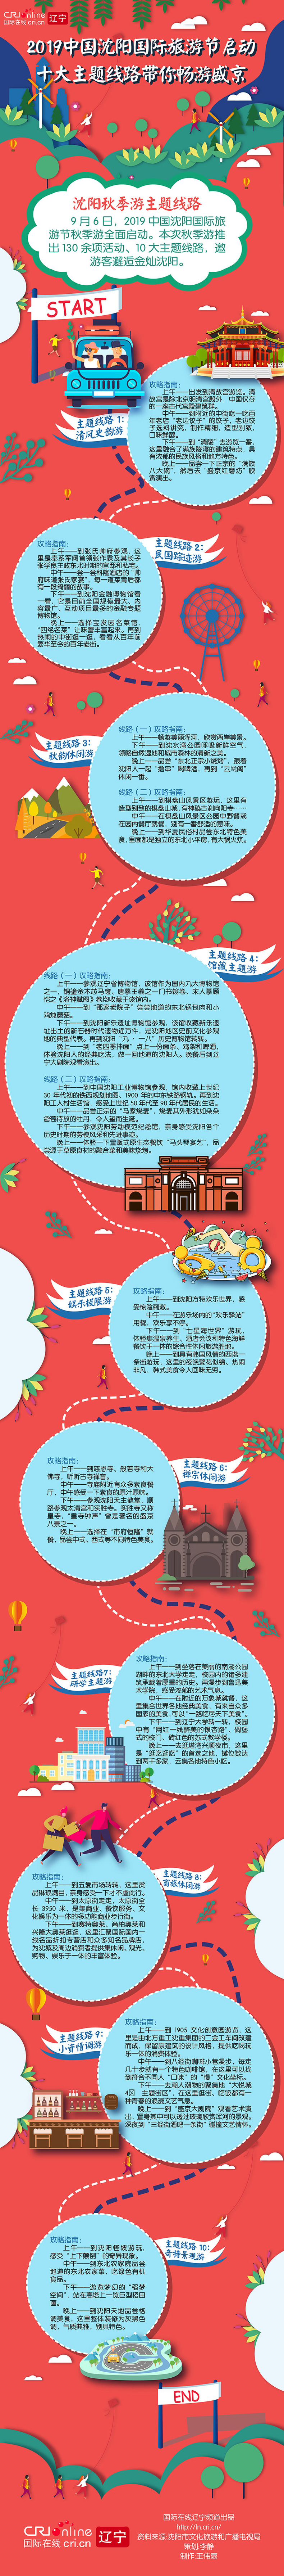 2019中国沈阳国际旅游节启动 十大主题线路畅游美好盛京